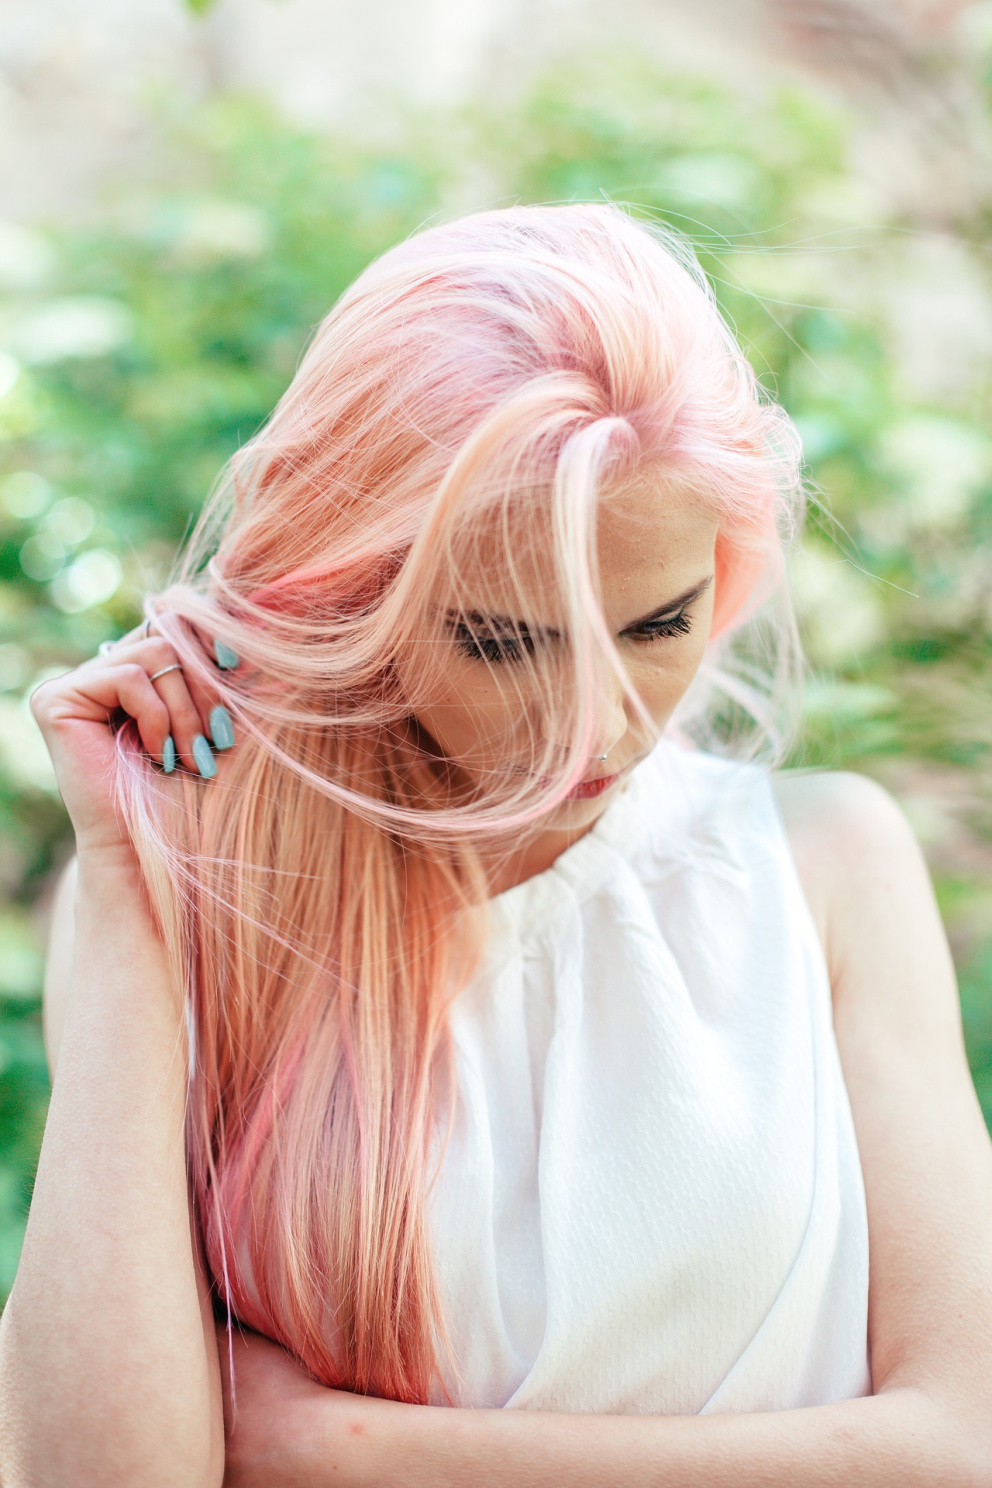 Broskvová barva vlasů je trendy hřejivý odstín, ve kterém vyniknete. Ideální pro oživení blond vlasů.
